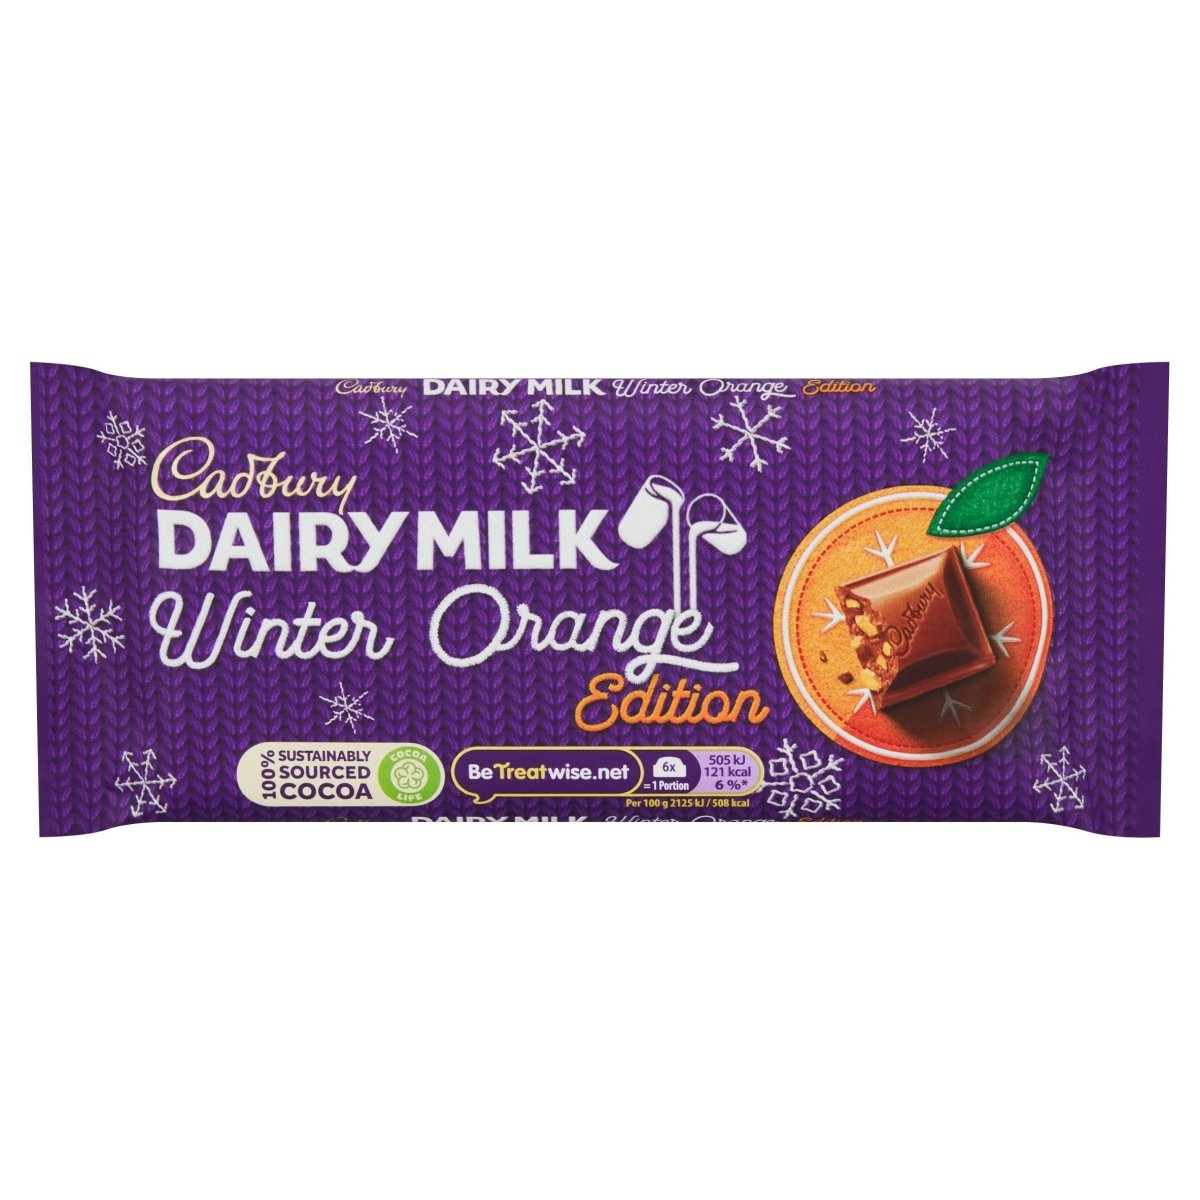 Cadbury's Dairy Milk Winter Orange Edition 95g - Candy Mail UK